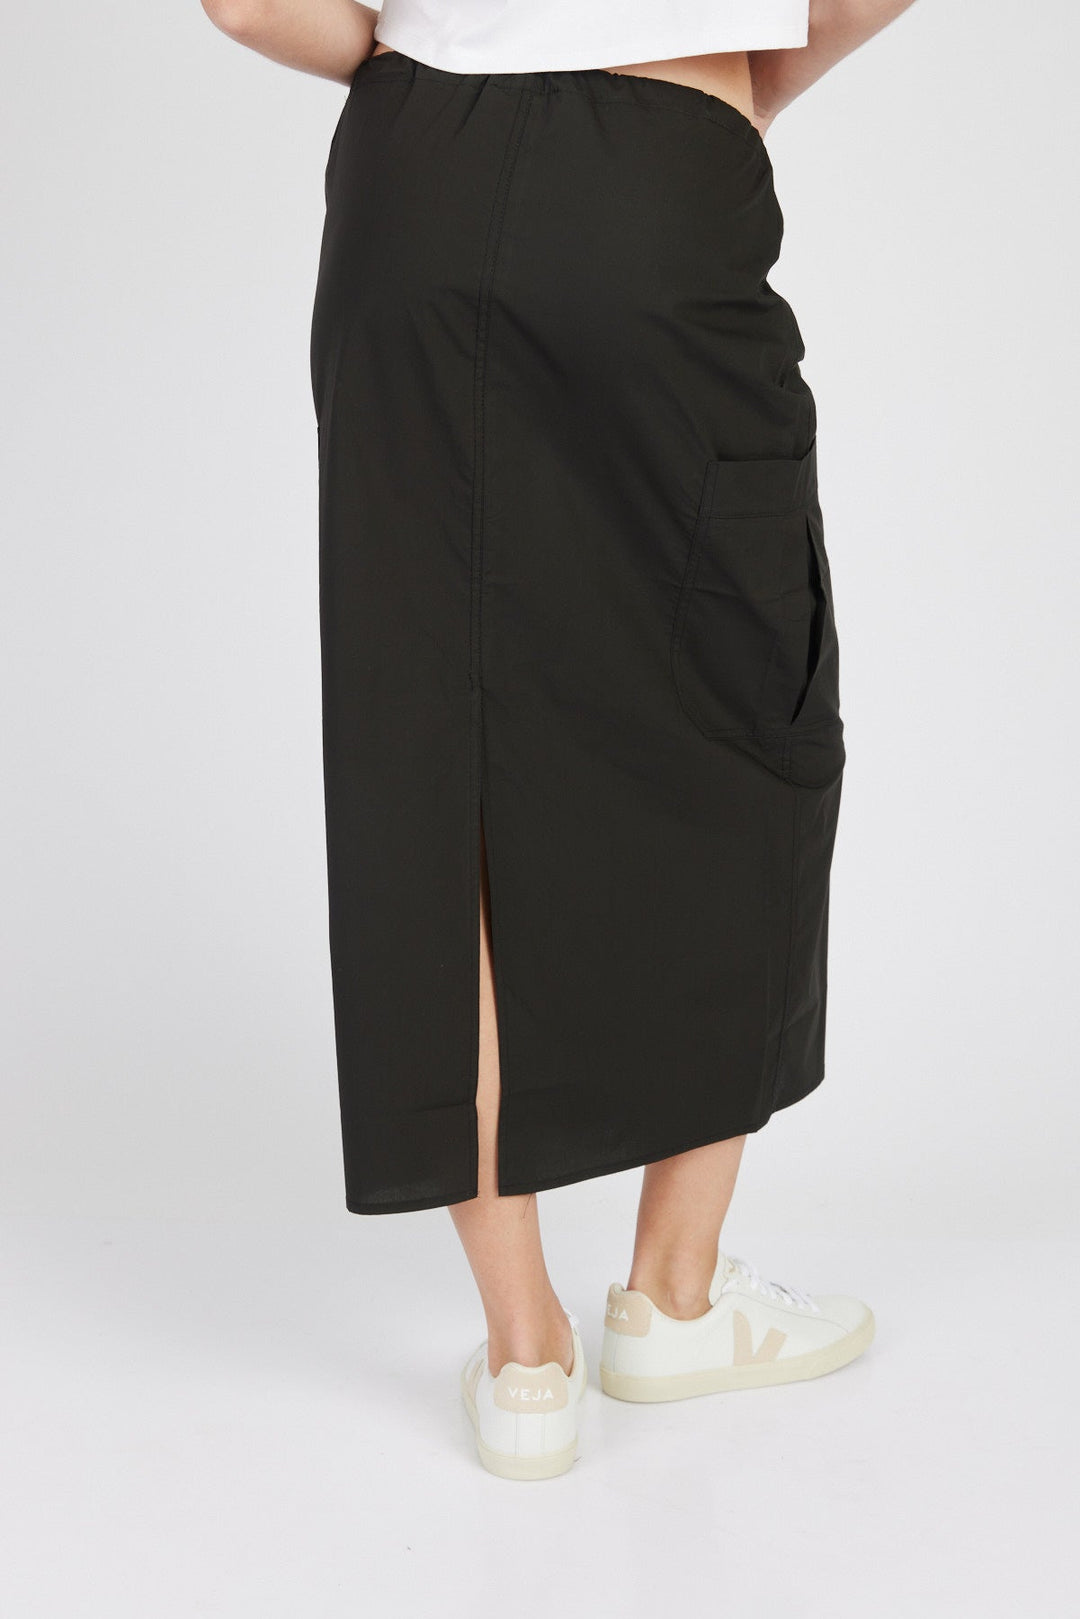 חצאית בריטאני בצבע שחור - Razili Studio